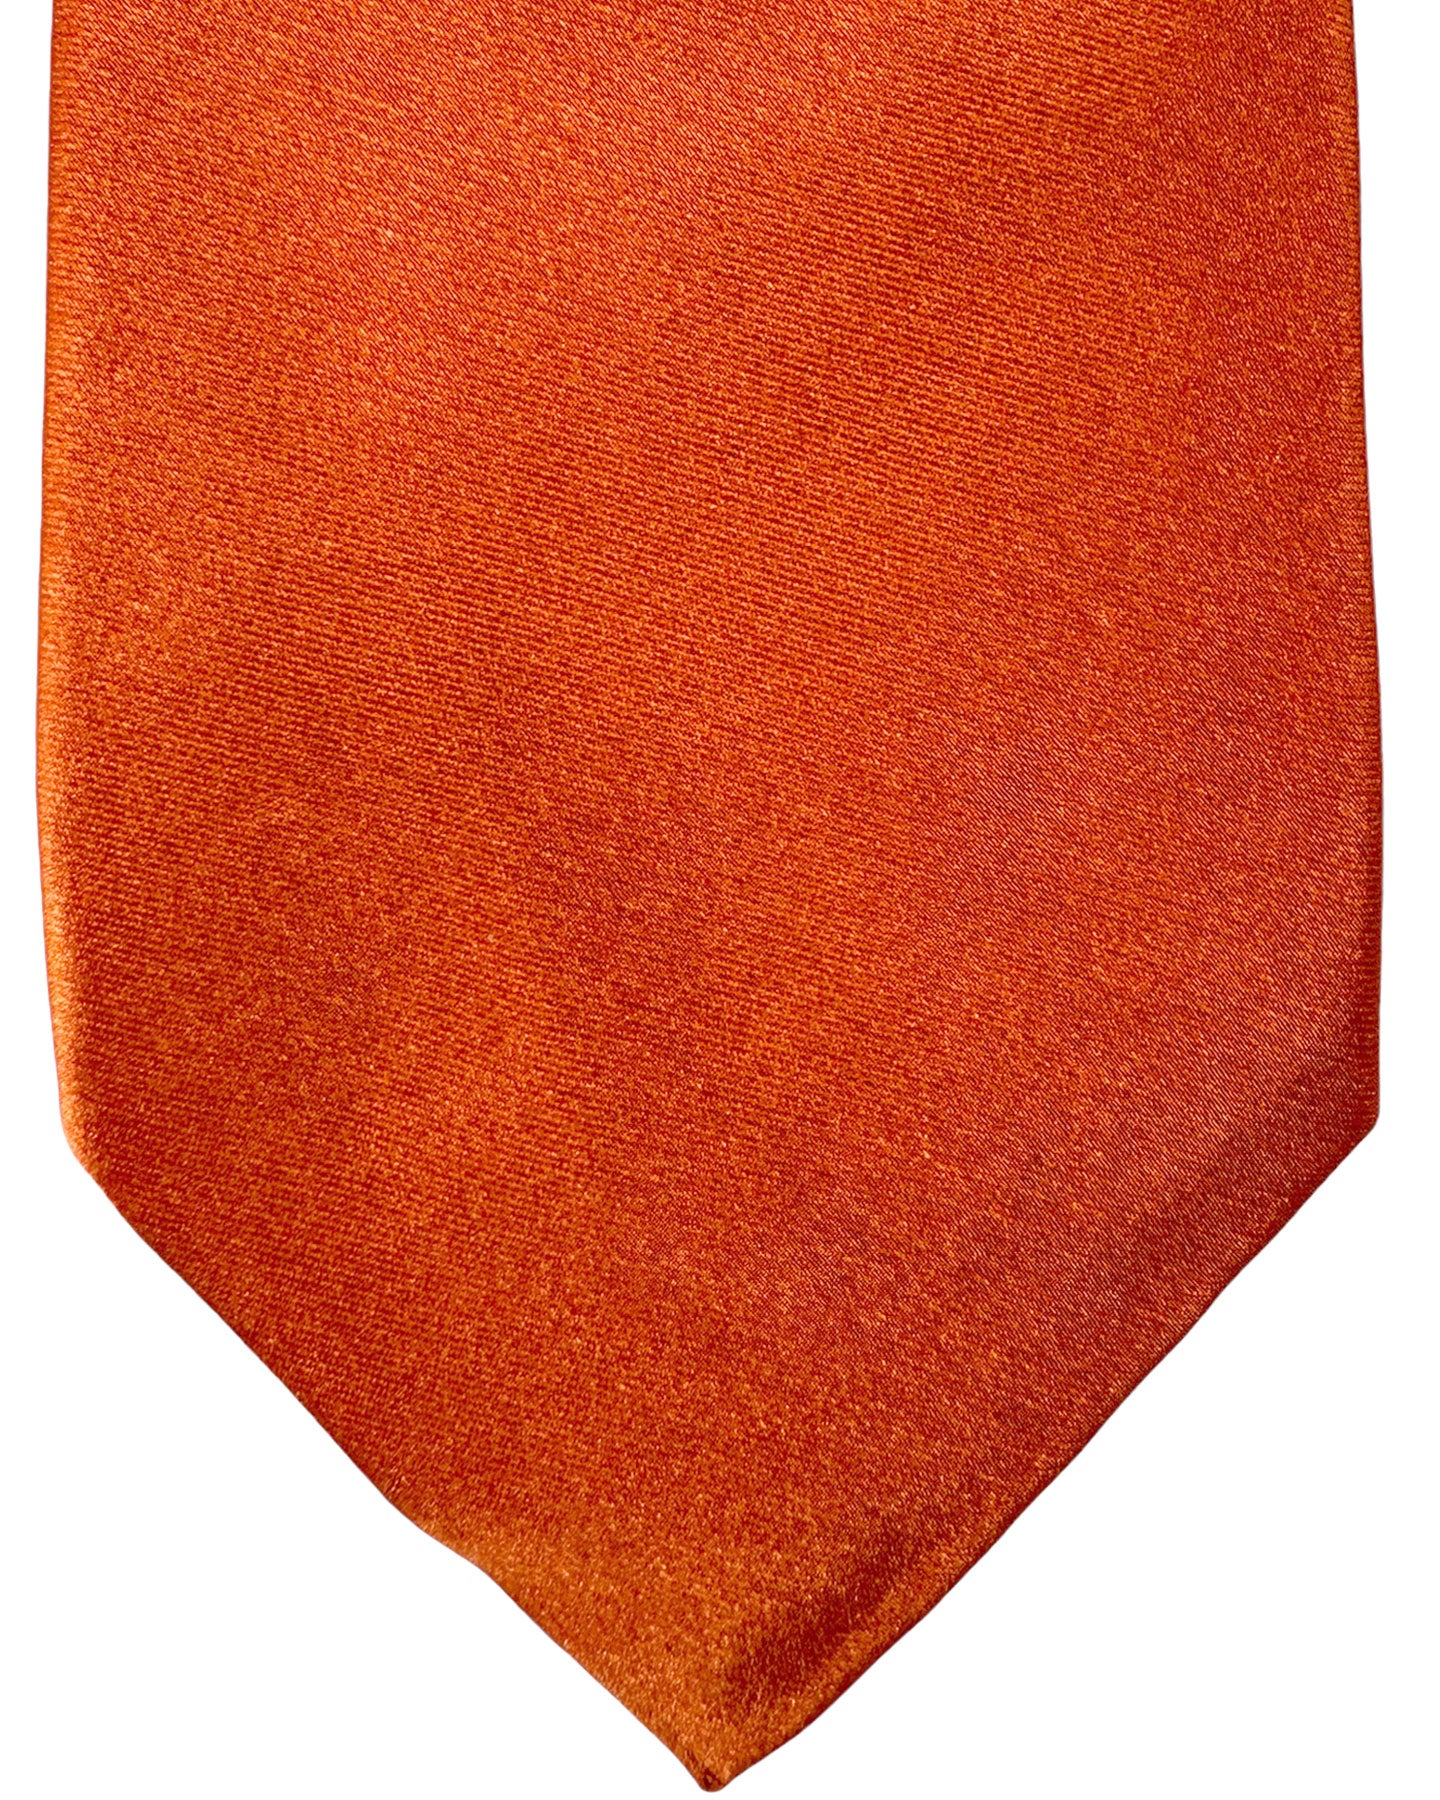 Kiton Silk Tie Orange Solid Design - Sevenfold Necktie